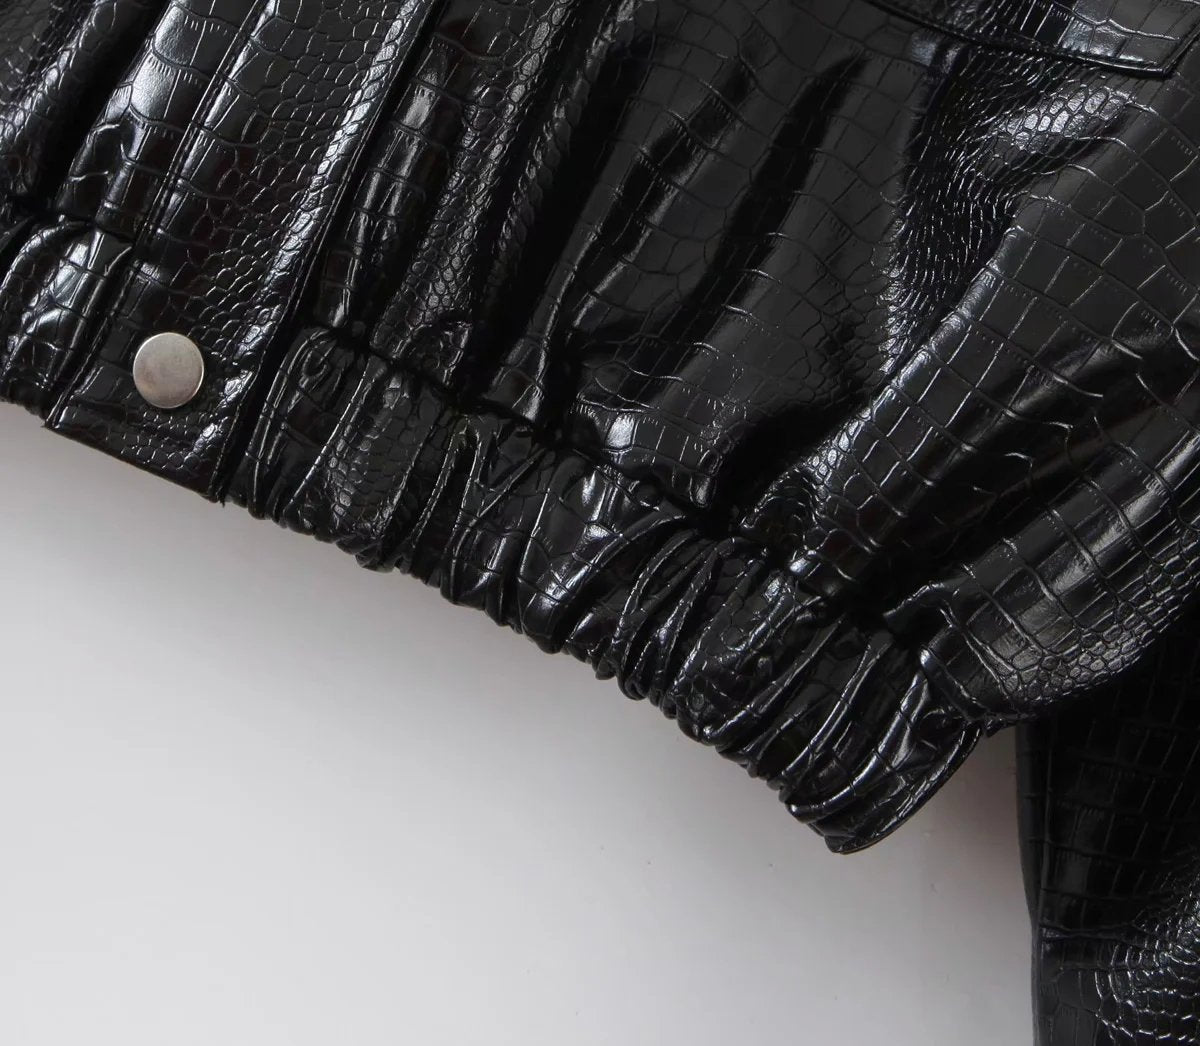 PU Leather Parkas Women Thick Faux Leather Short Black Coat Jacket